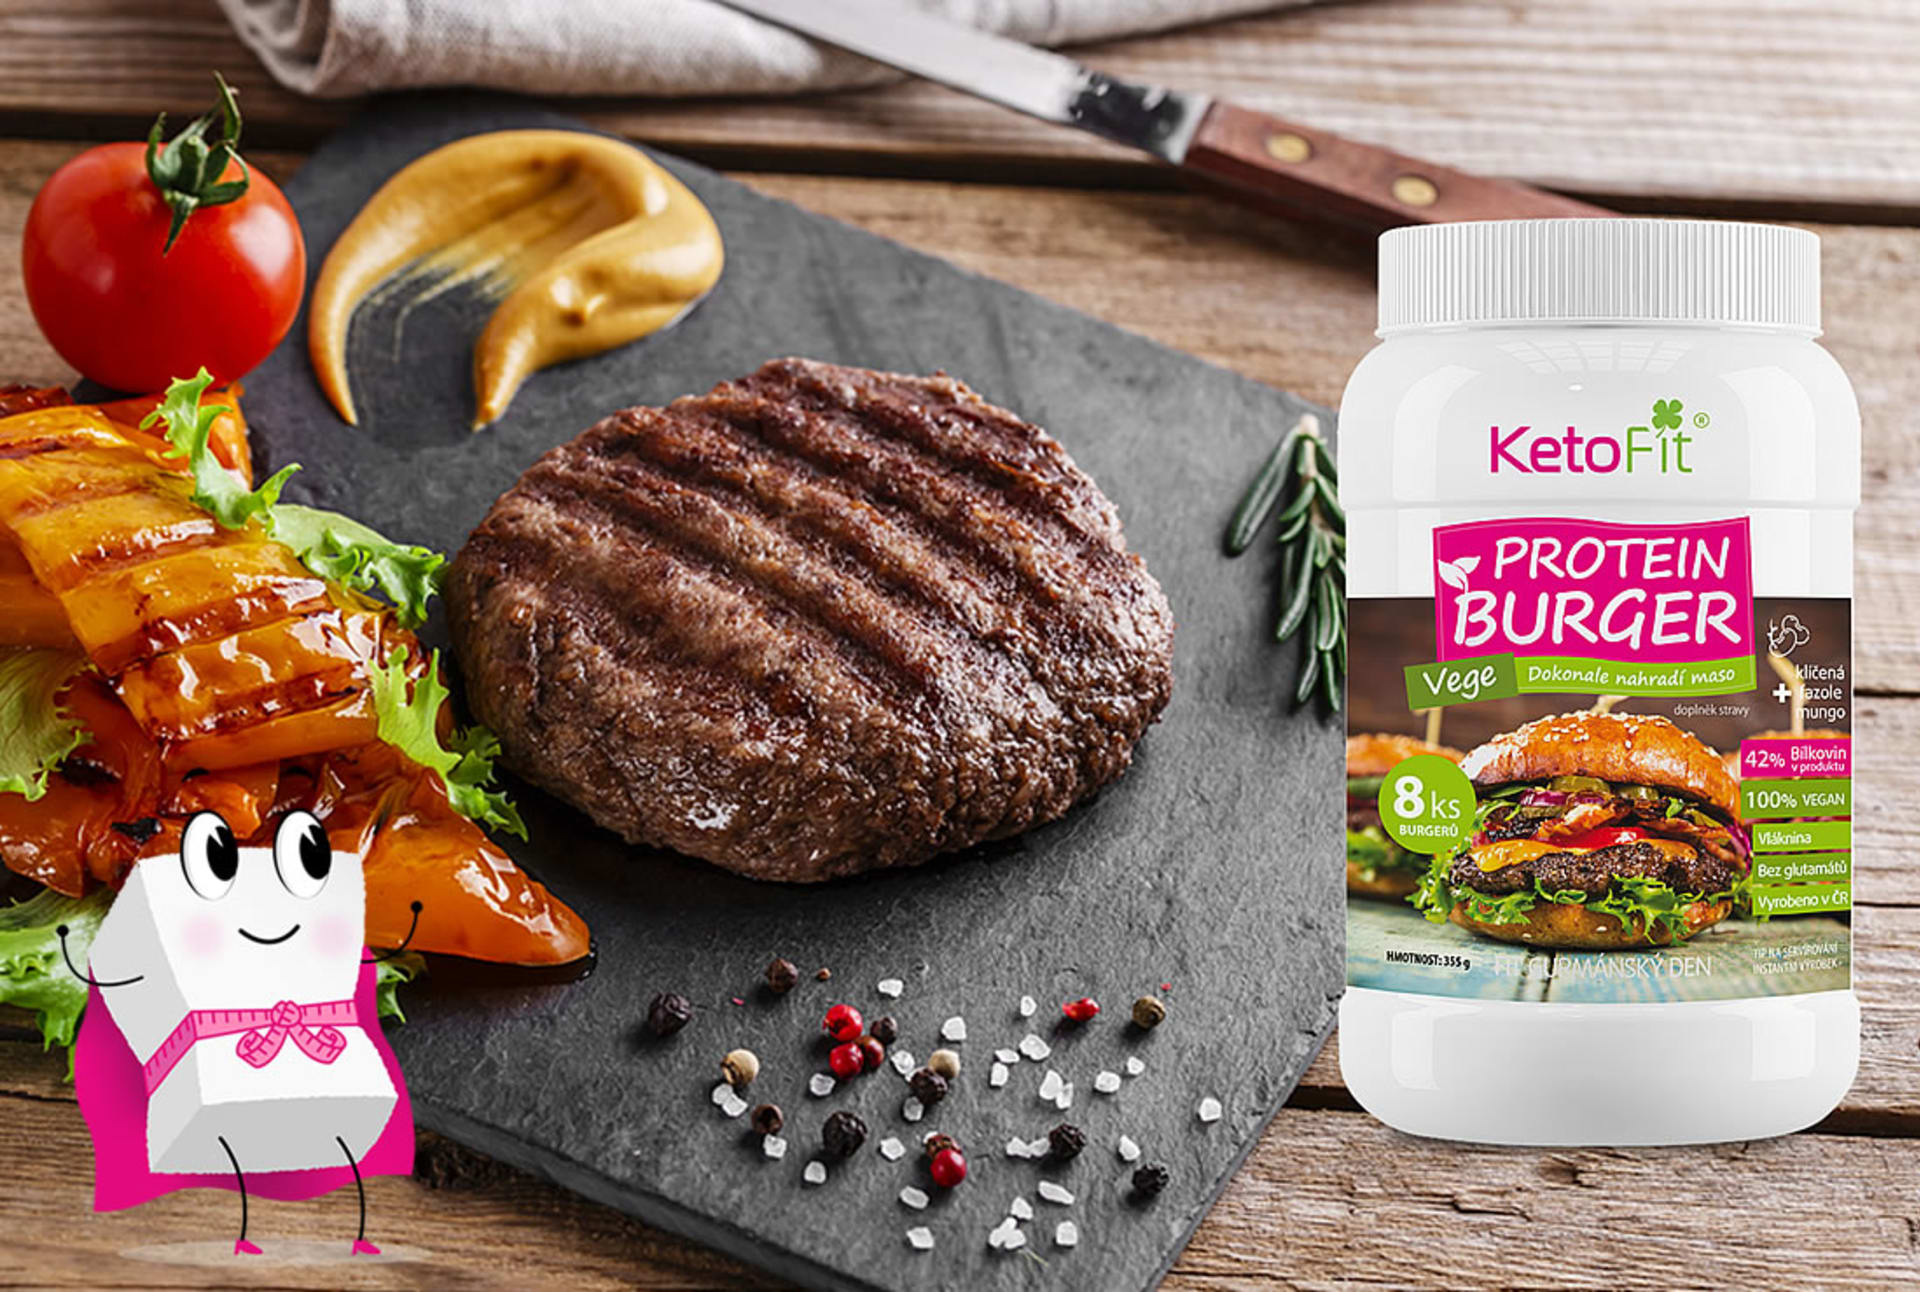 KetoFit vege burger pro FIT postavu se 42   bílkovin.